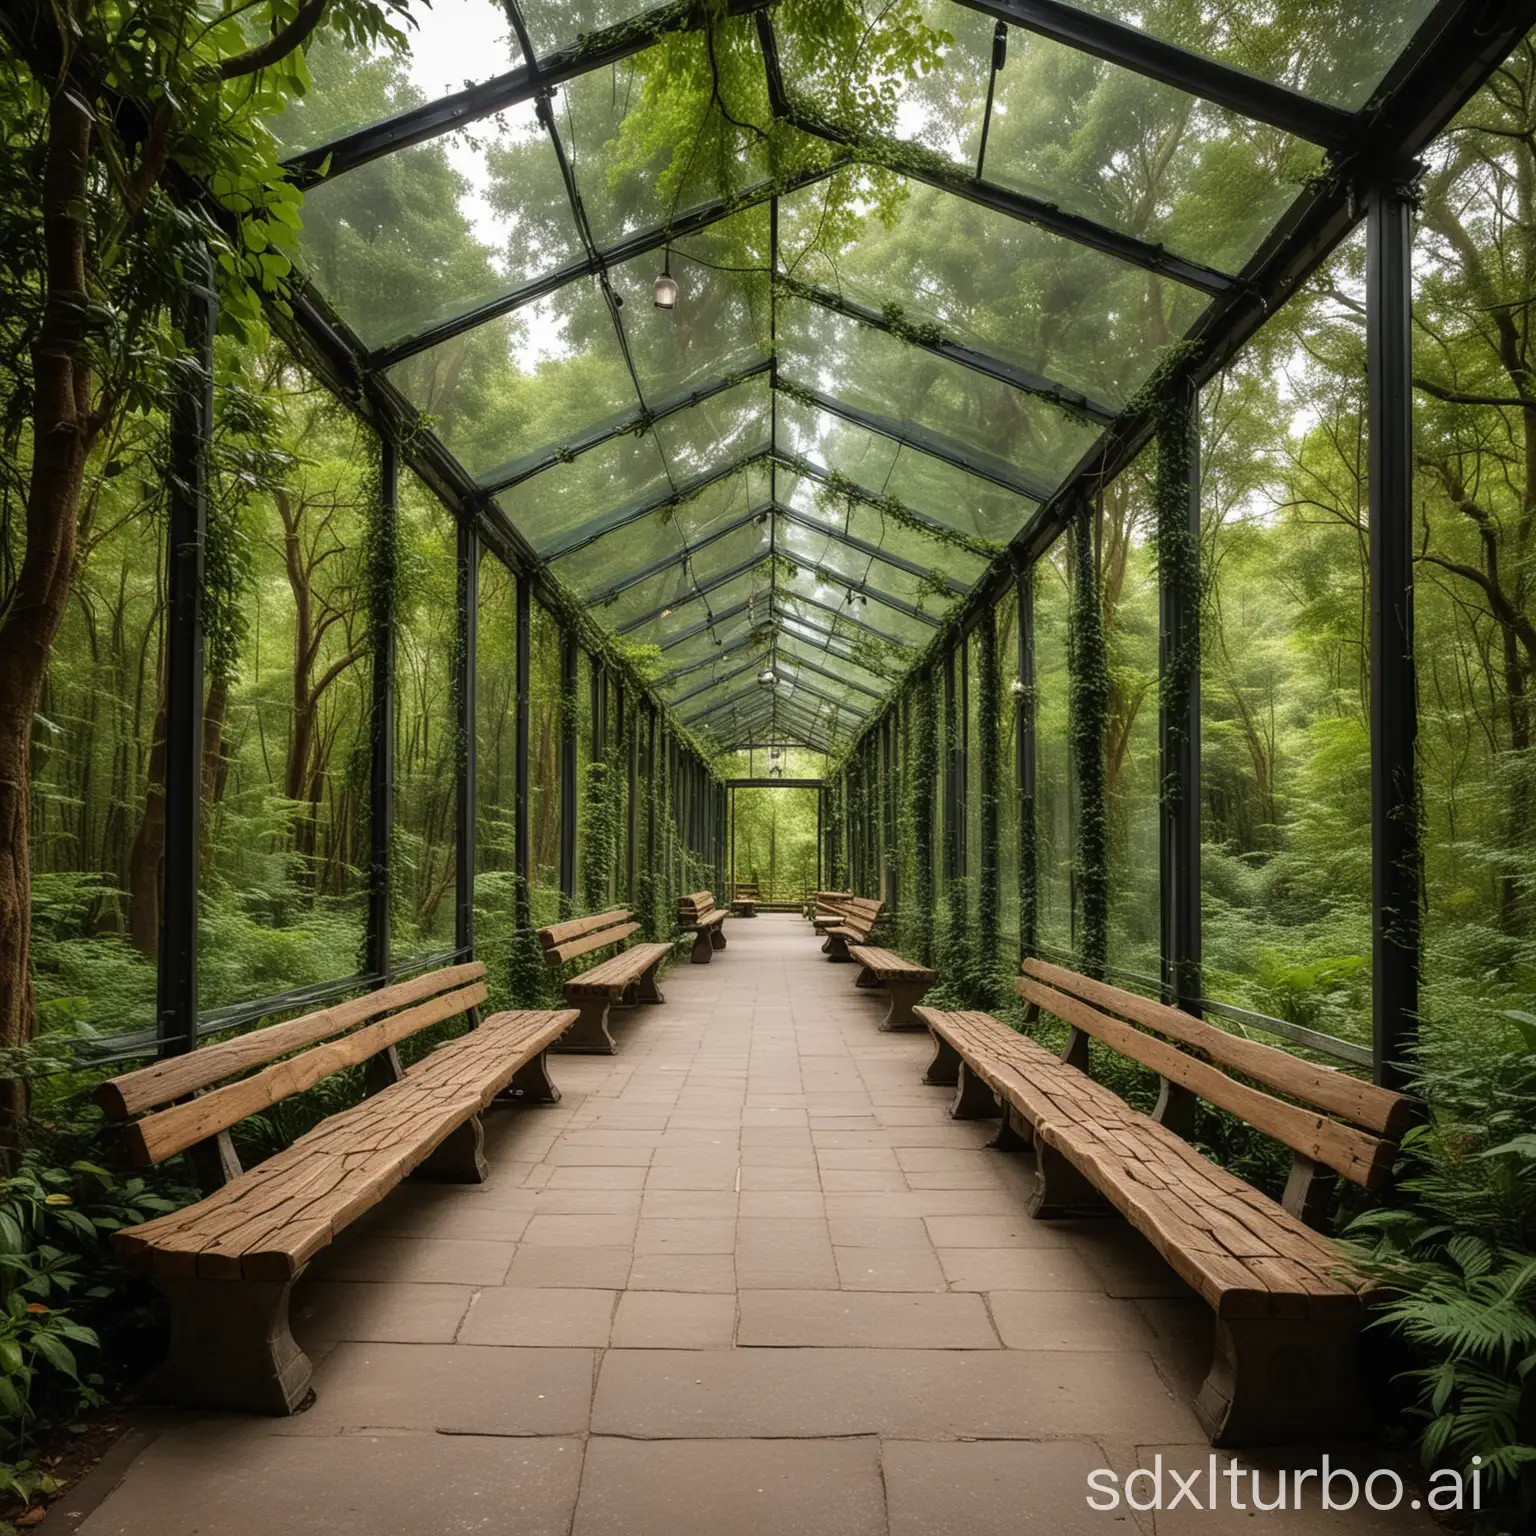 Eine gerade Promenade mit einer Glasüberdachung, die mitten durch einen dicht bewachsenen Regenwald führt, idyllische romanische Lichtstimmung. An den Seiten befinden sich einige Bänke zum Ausruhen und Dekoelemente. Weitwinkel